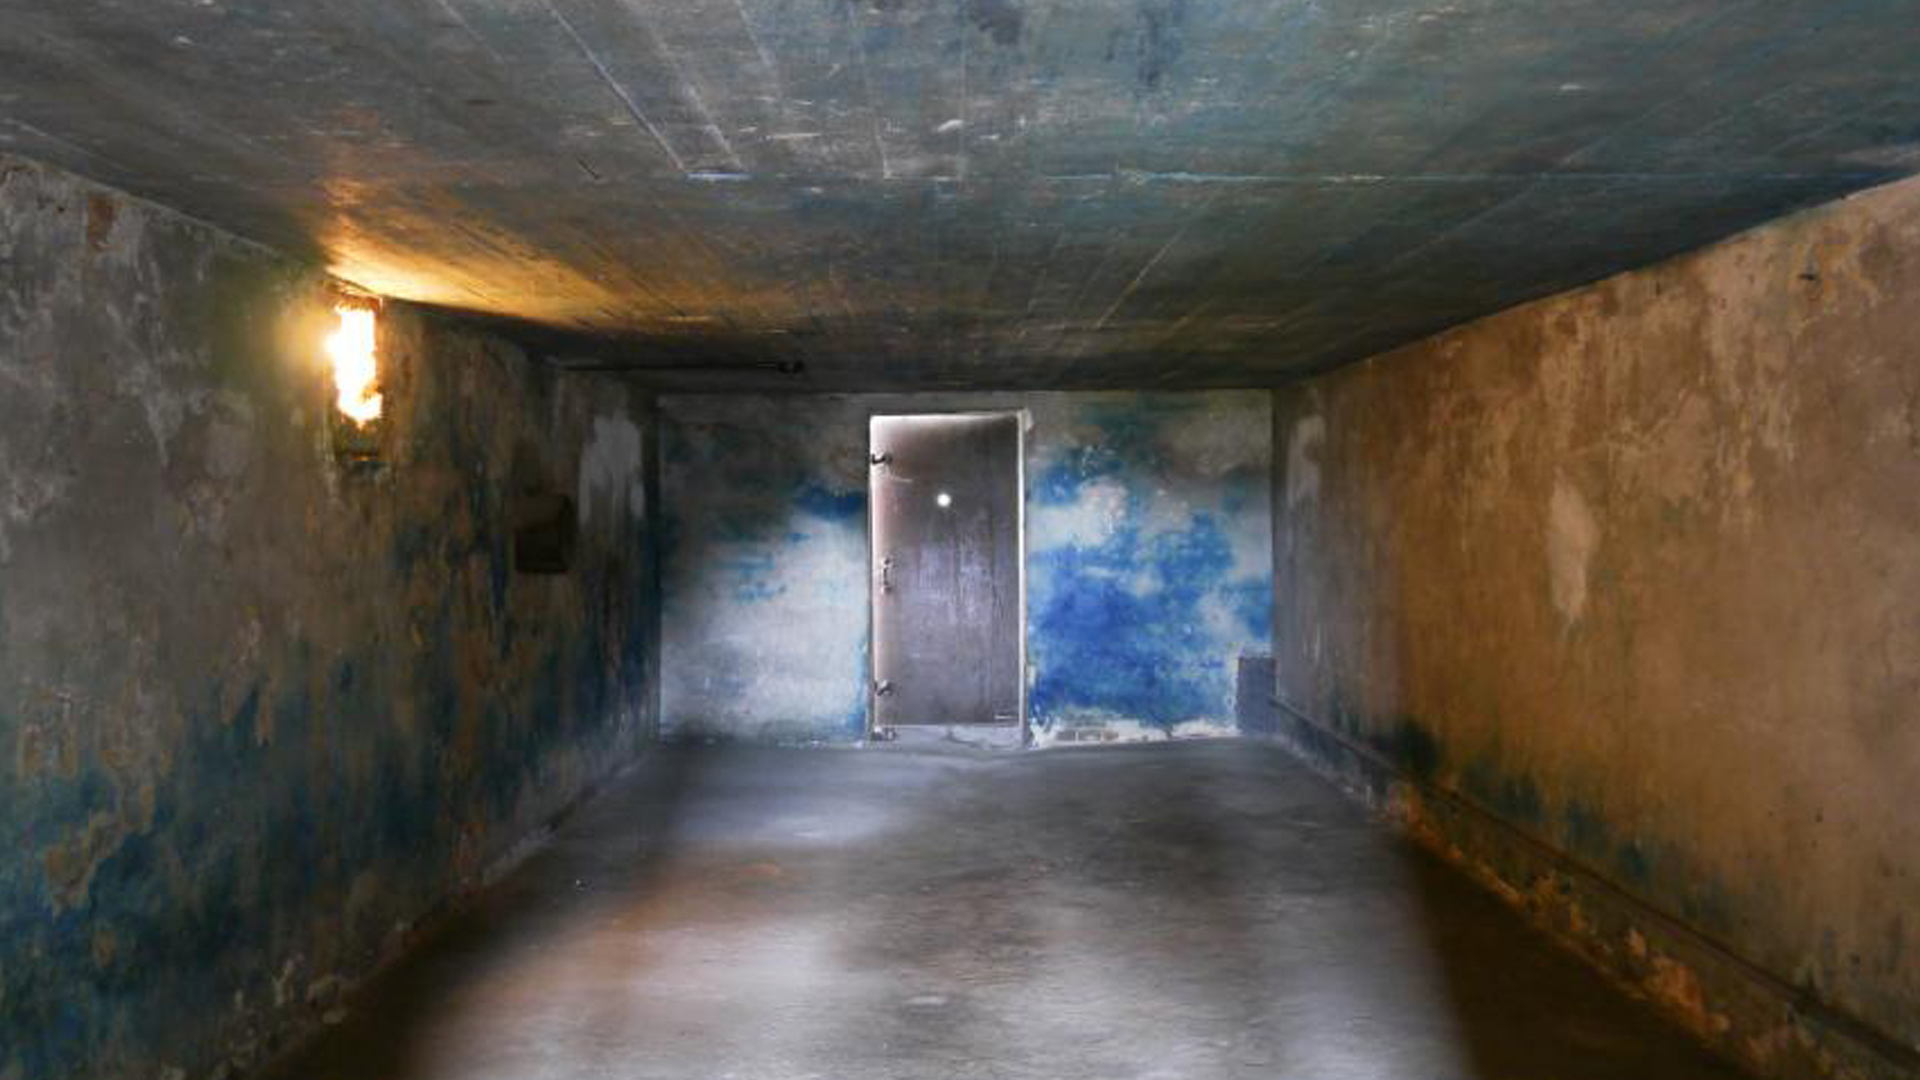 La cámara de gas del campo de exterminio de Majdanek. La creación de las cámaras de gas fue un proceso. Los nazis fueron probando distintos métodos criminales hasta llegar a este, terrible, masivo y definitivo.